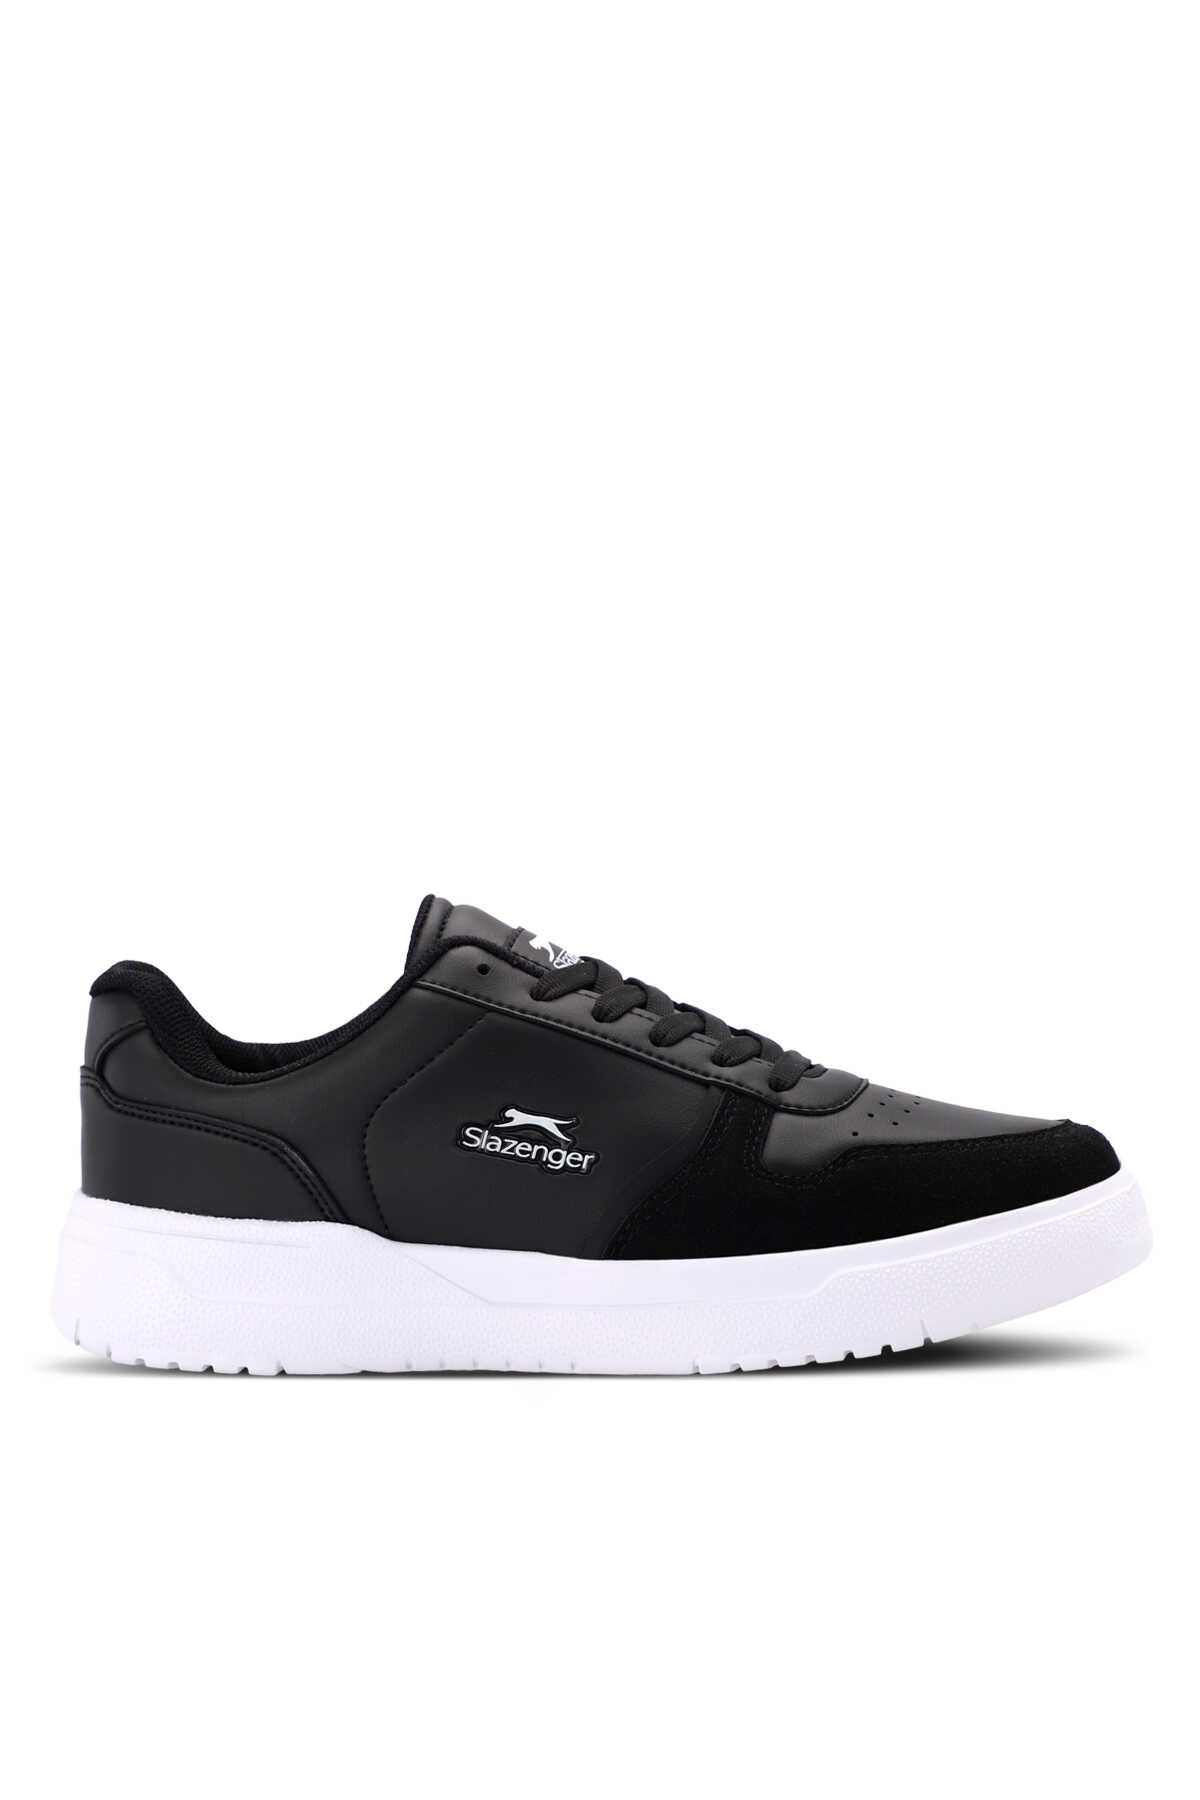 Slazenger - Slazenger MASK I Erkek Sneaker Ayakkabı Siyah / Beyaz